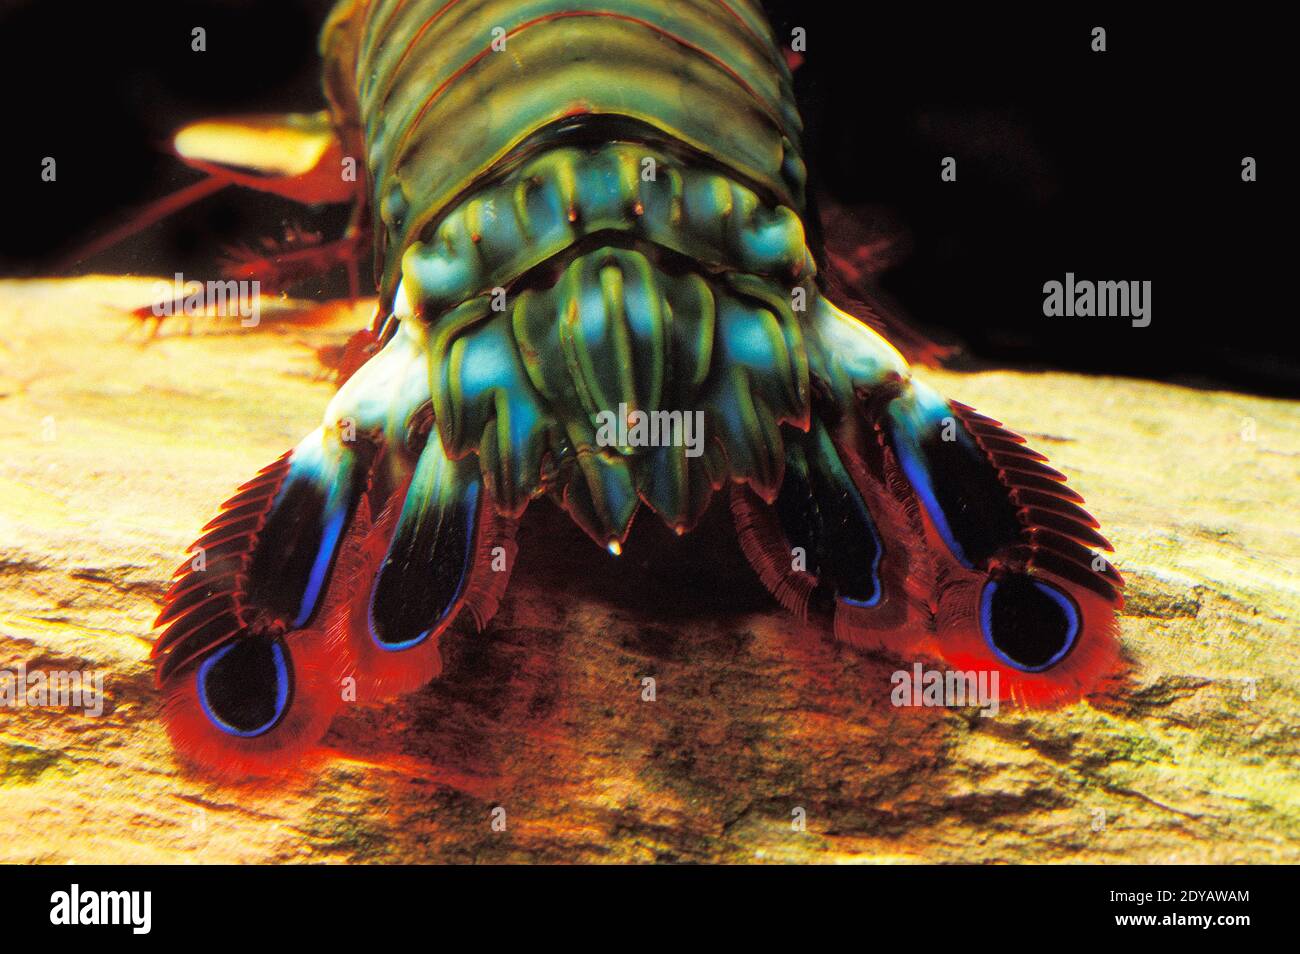 Peacock Mantis Shrimp, odontodactylus scyllarus, Close up of Tail Stock Photo